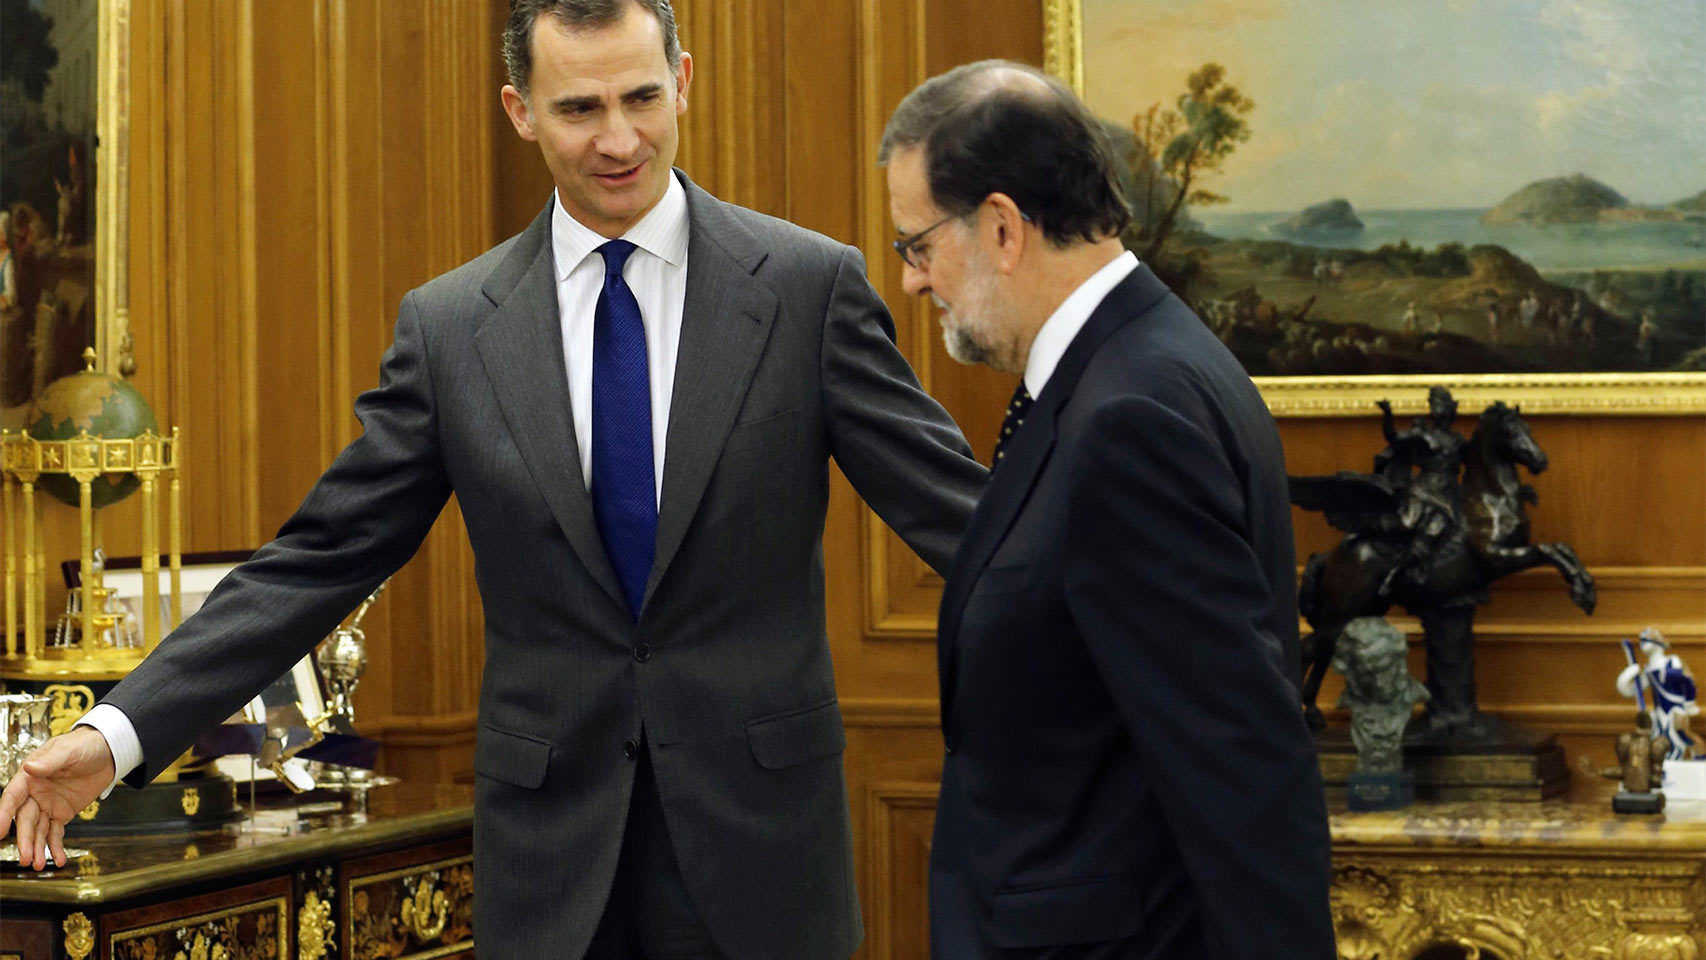 España: El conservador Mariano Rajoy acepta ir a sesión de investidura